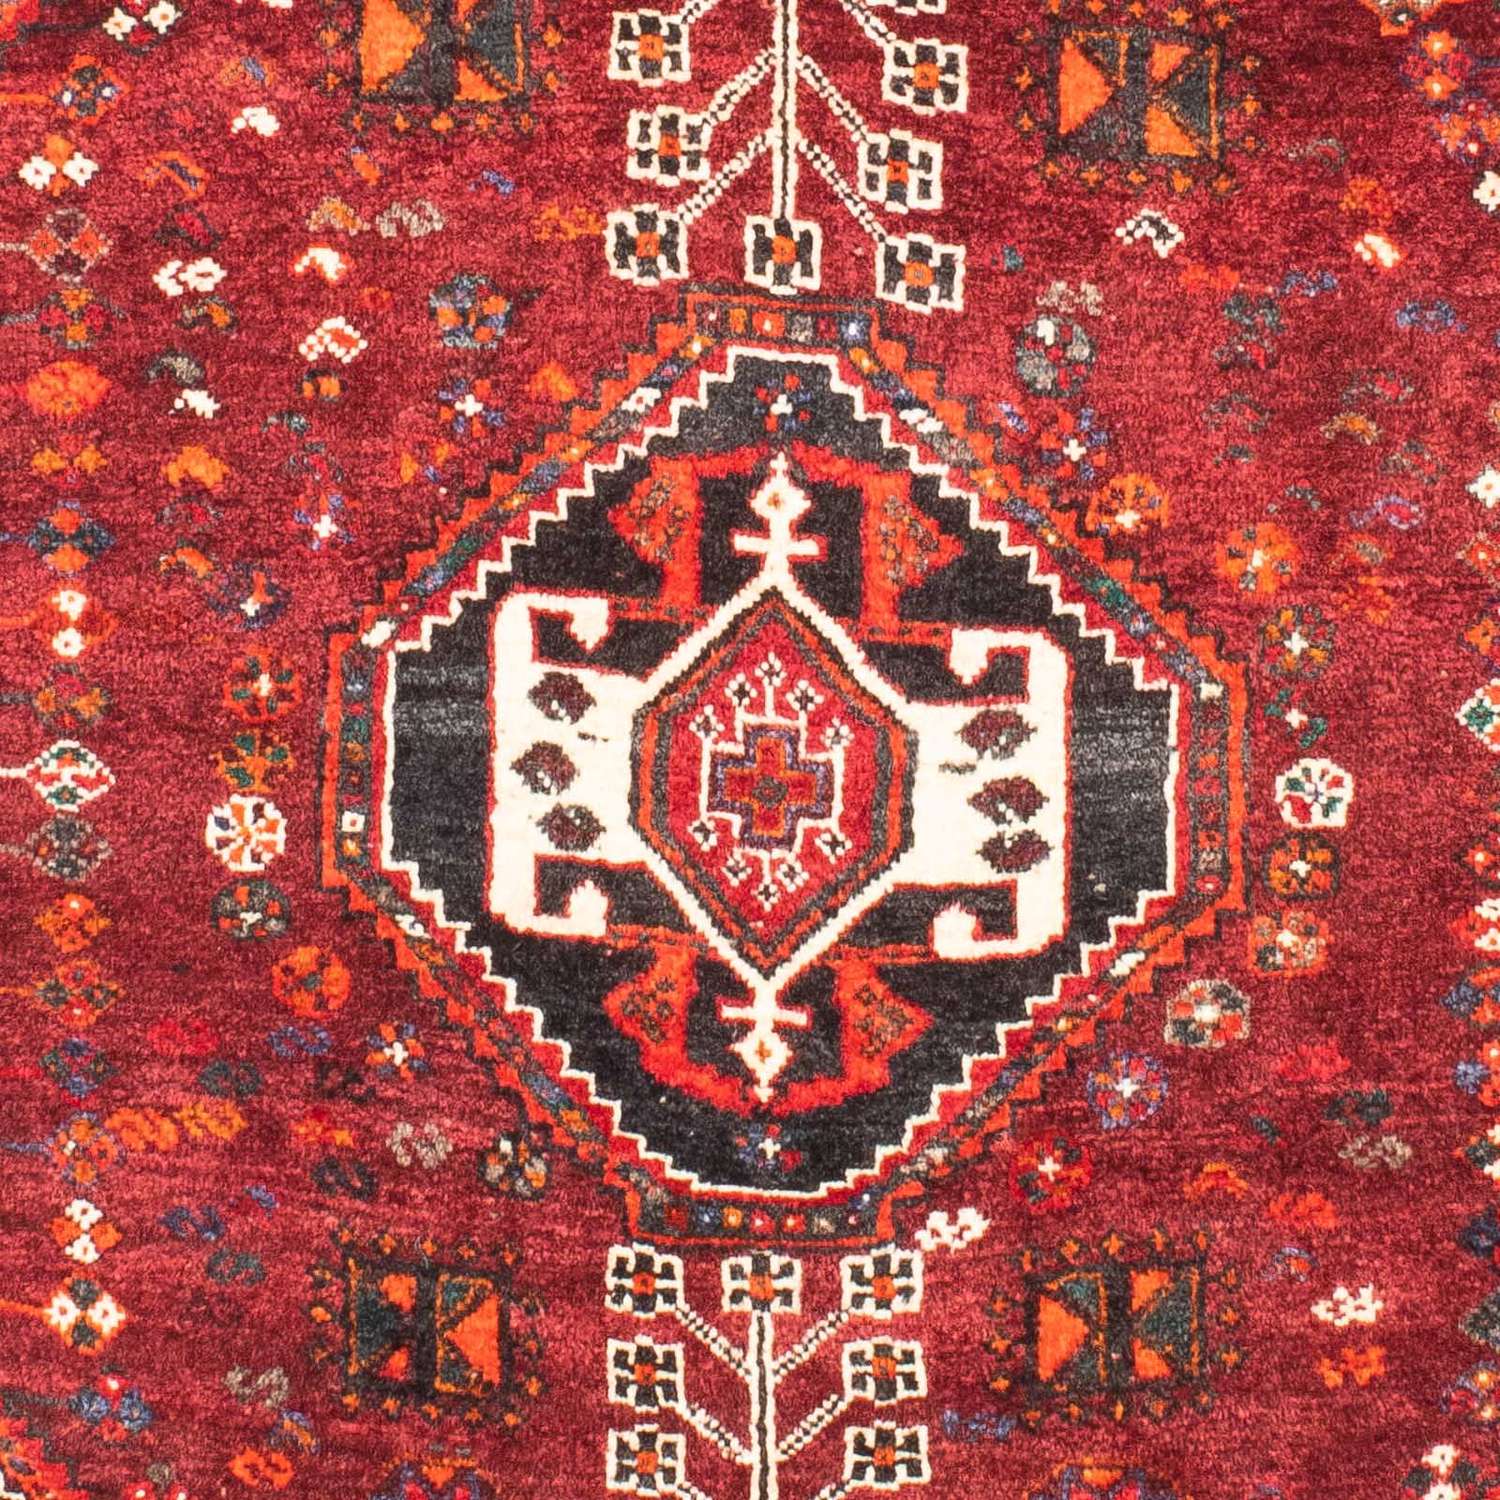 Perski dywan - Nomadyczny - 148 x 108 cm - ciemna czerwień